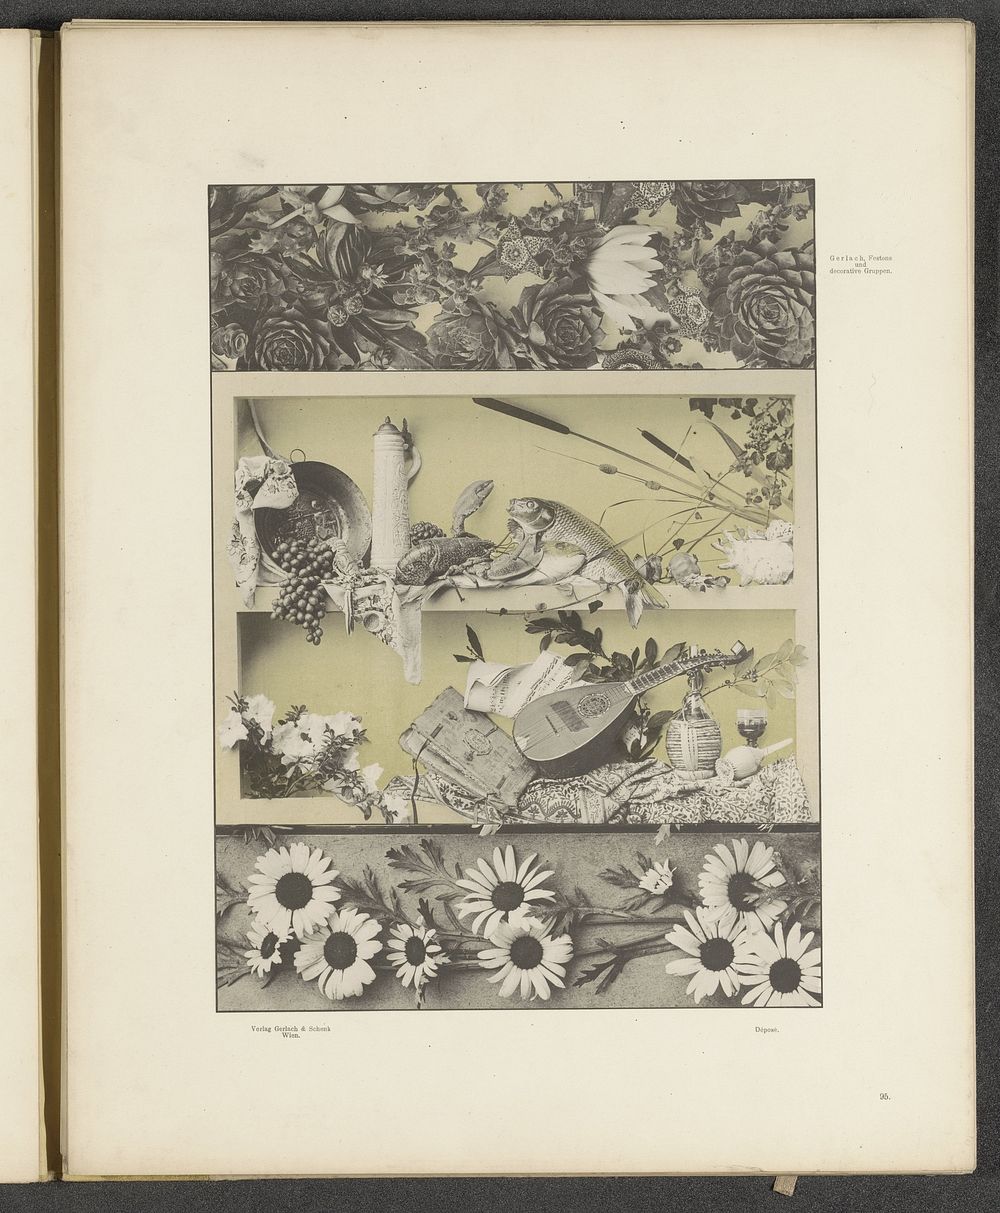 Stilleven met een mandoline, vissen en een boek en sierlijsten met bloemen (c. 1887 - in or before 1897) by anonymous and…